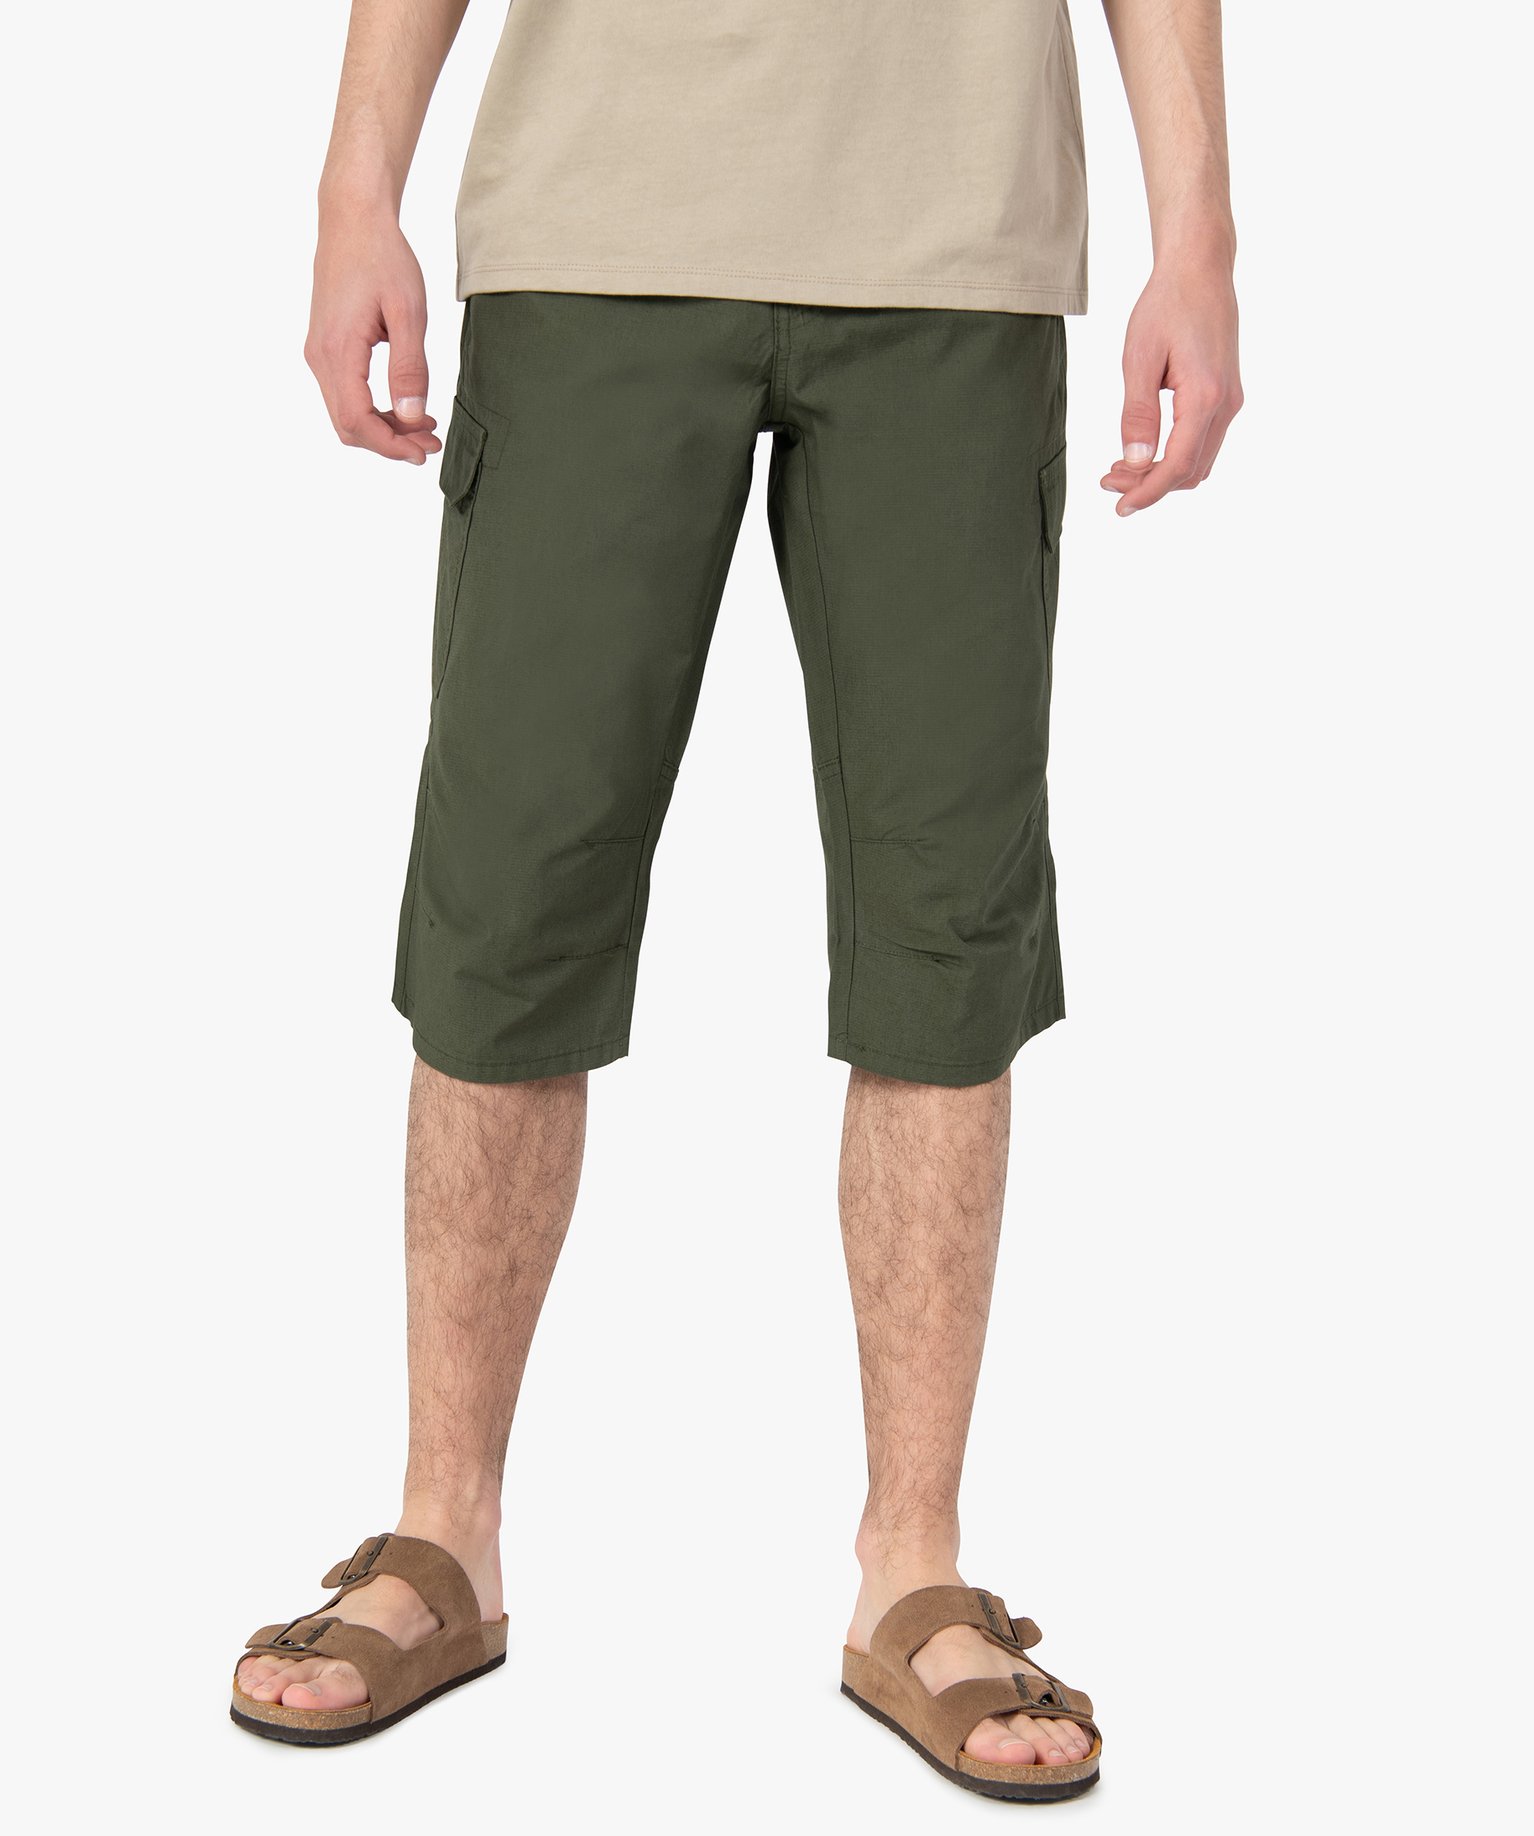 bermuda homme avec poches rabat sur les cuisses vert pantalons de costume